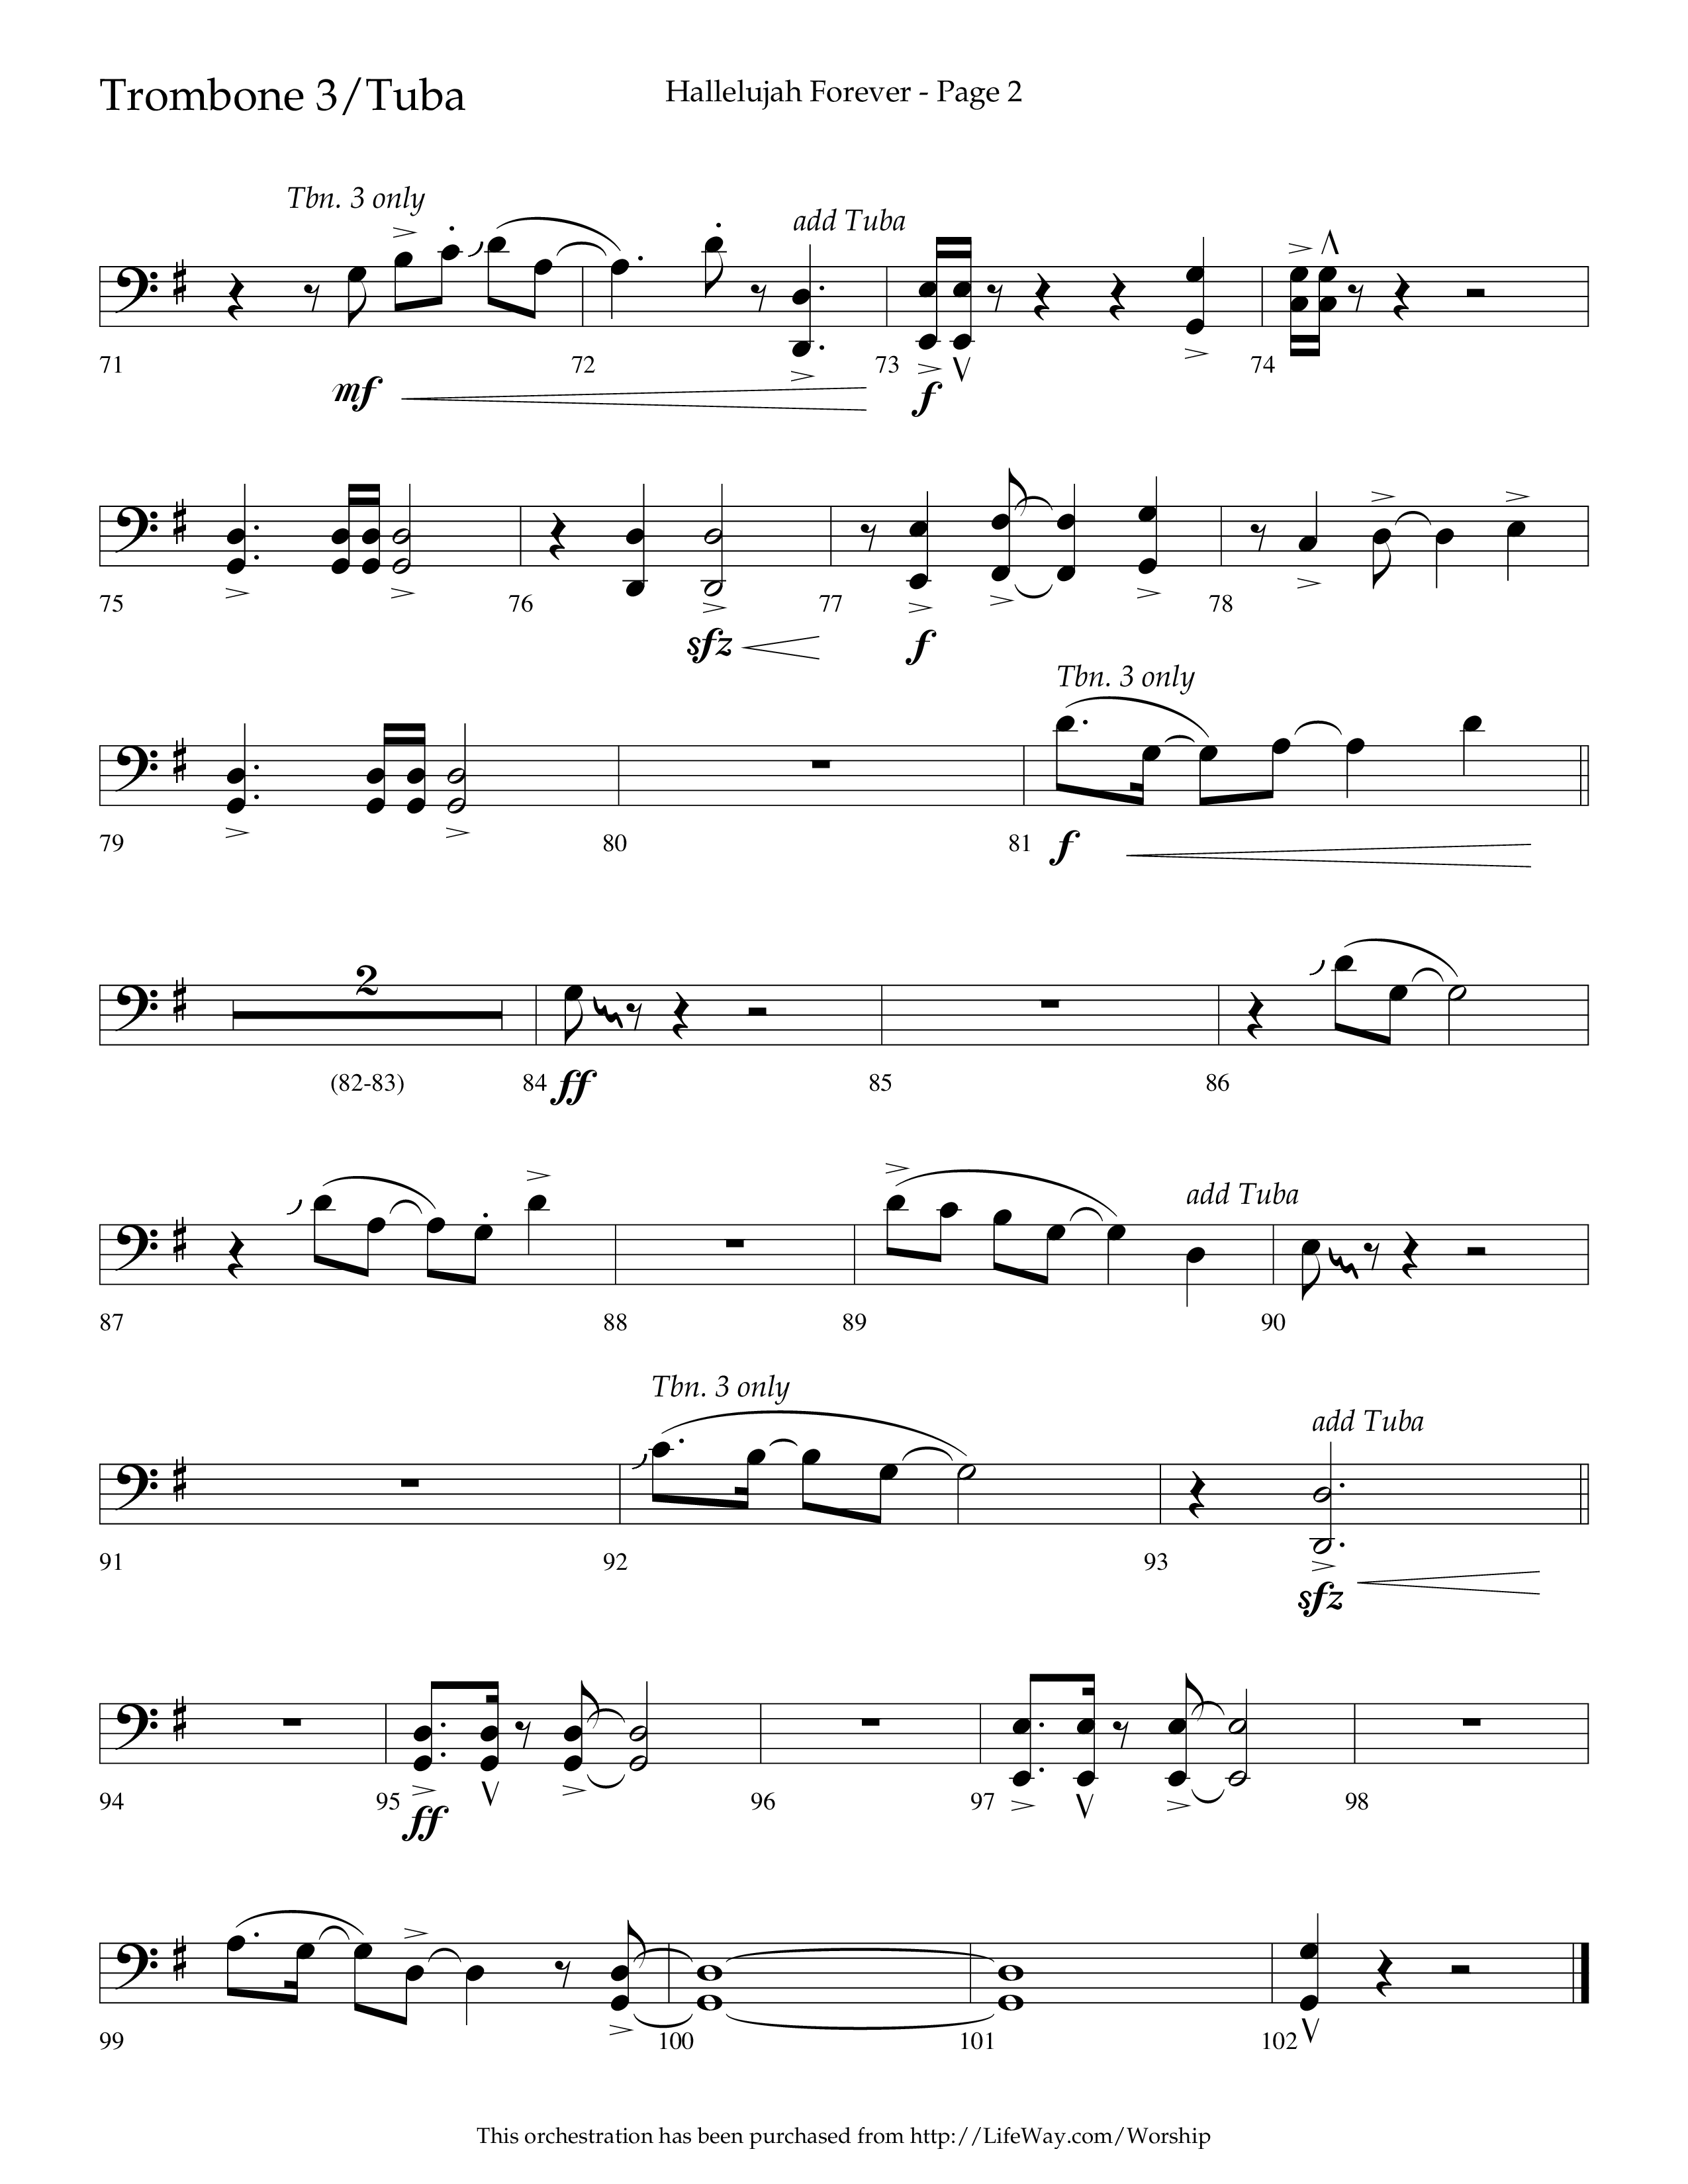 Hallelujah Forever (Choral Anthem SATB) Trombone 3/Tuba (Lifeway Choral / Arr. Cliff Duren)